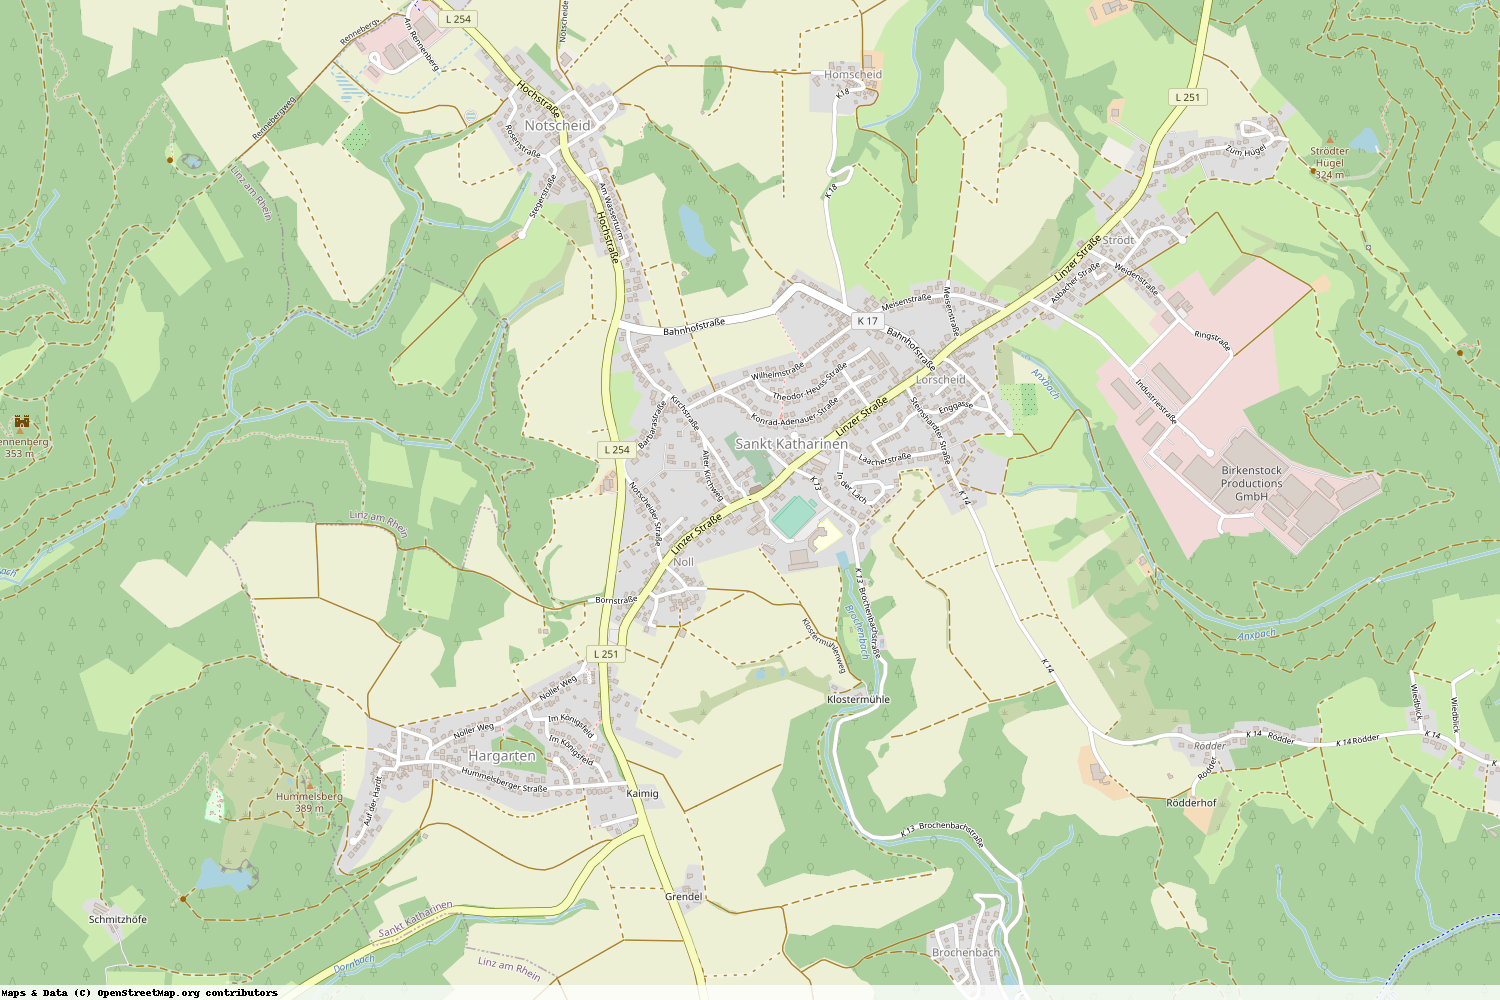 Ist gerade Stromausfall in Rheinland-Pfalz - Neuwied - Sankt Katharinen (Landkreis Neuwied)?